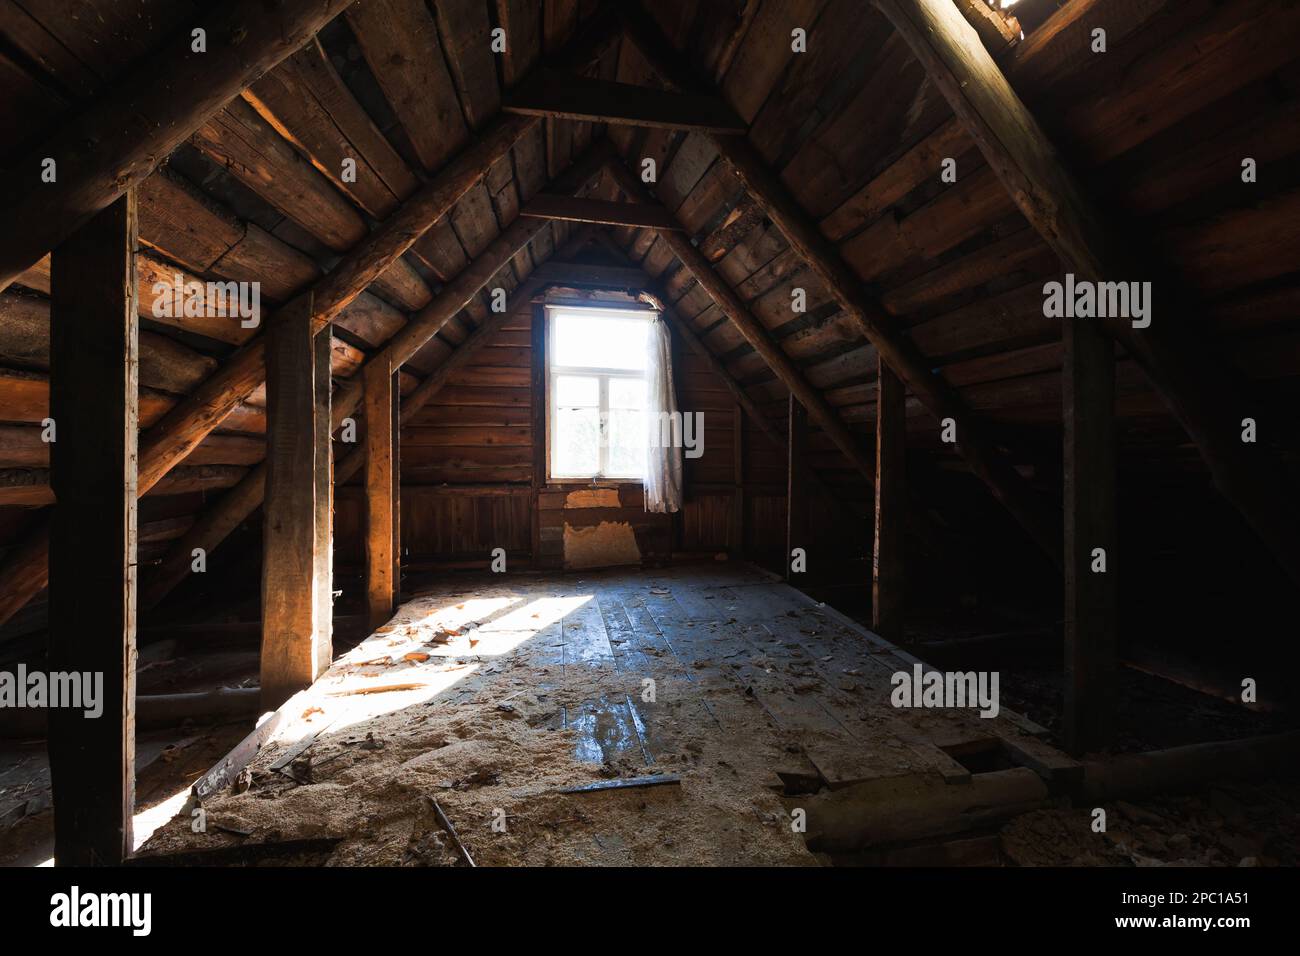 Abstraktes Grunge-Holz-Interieur, Ausblick auf einen verlassenen Dachboden mit leuchtenden Fenstern Stockfoto